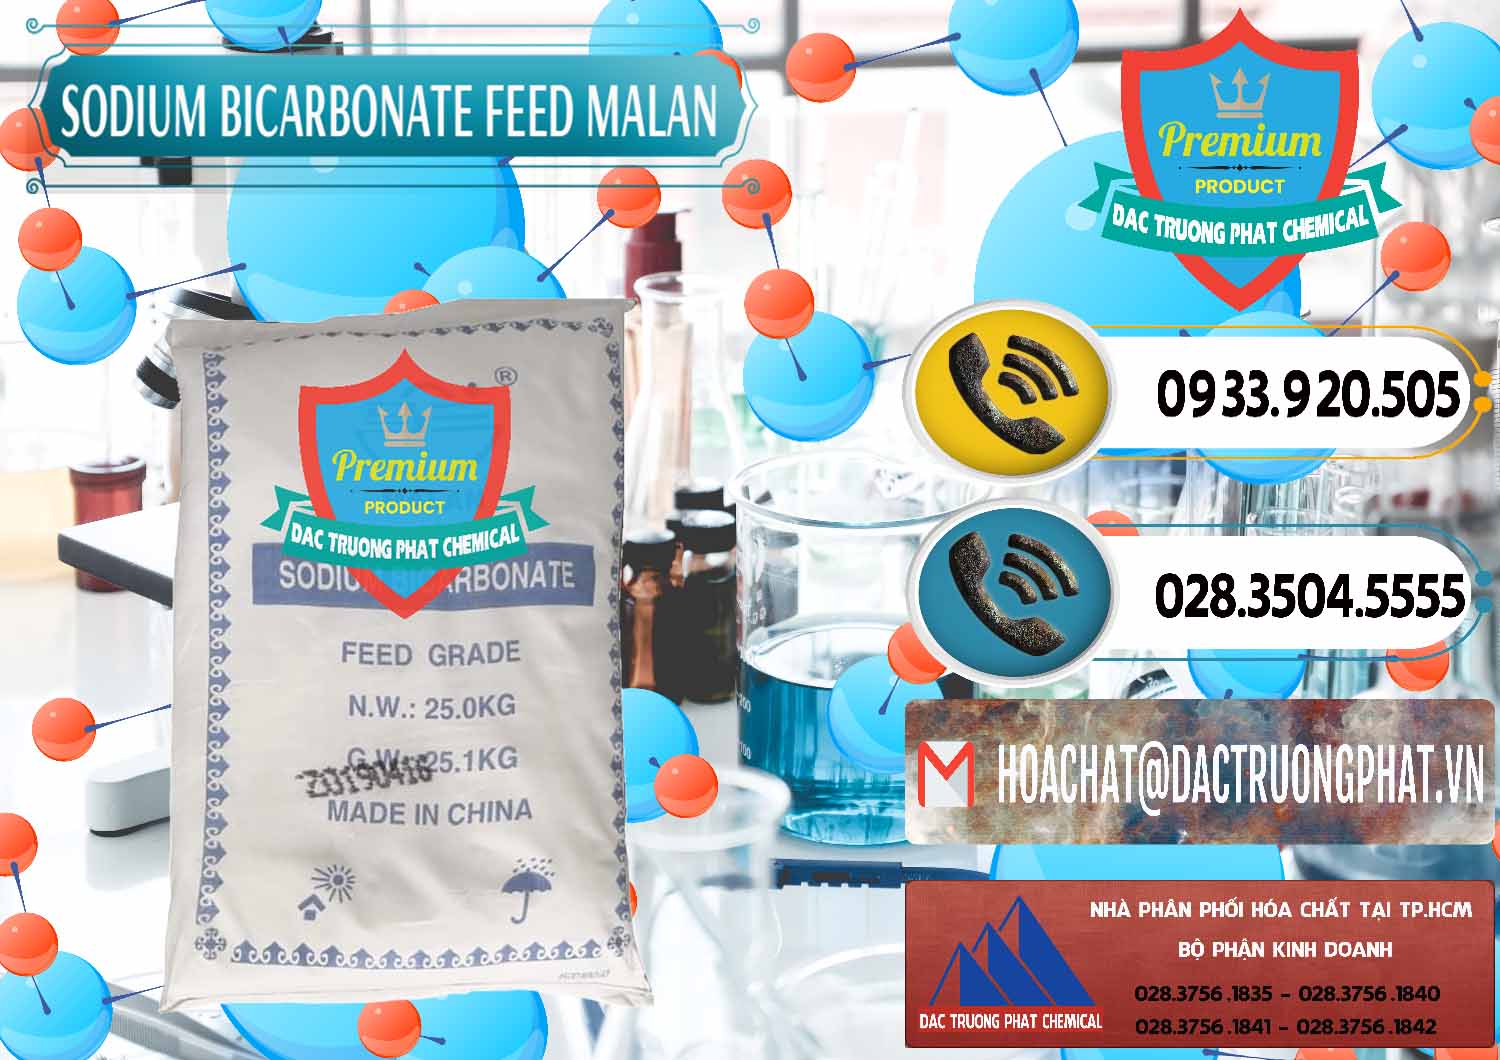 Công ty bán ( cung cấp ) Sodium Bicarbonate – Bicar NaHCO3 Feed Grade Malan Trung Quốc China - 0262 - Nhà cung cấp và kinh doanh hóa chất tại TP.HCM - hoachatdetnhuom.vn